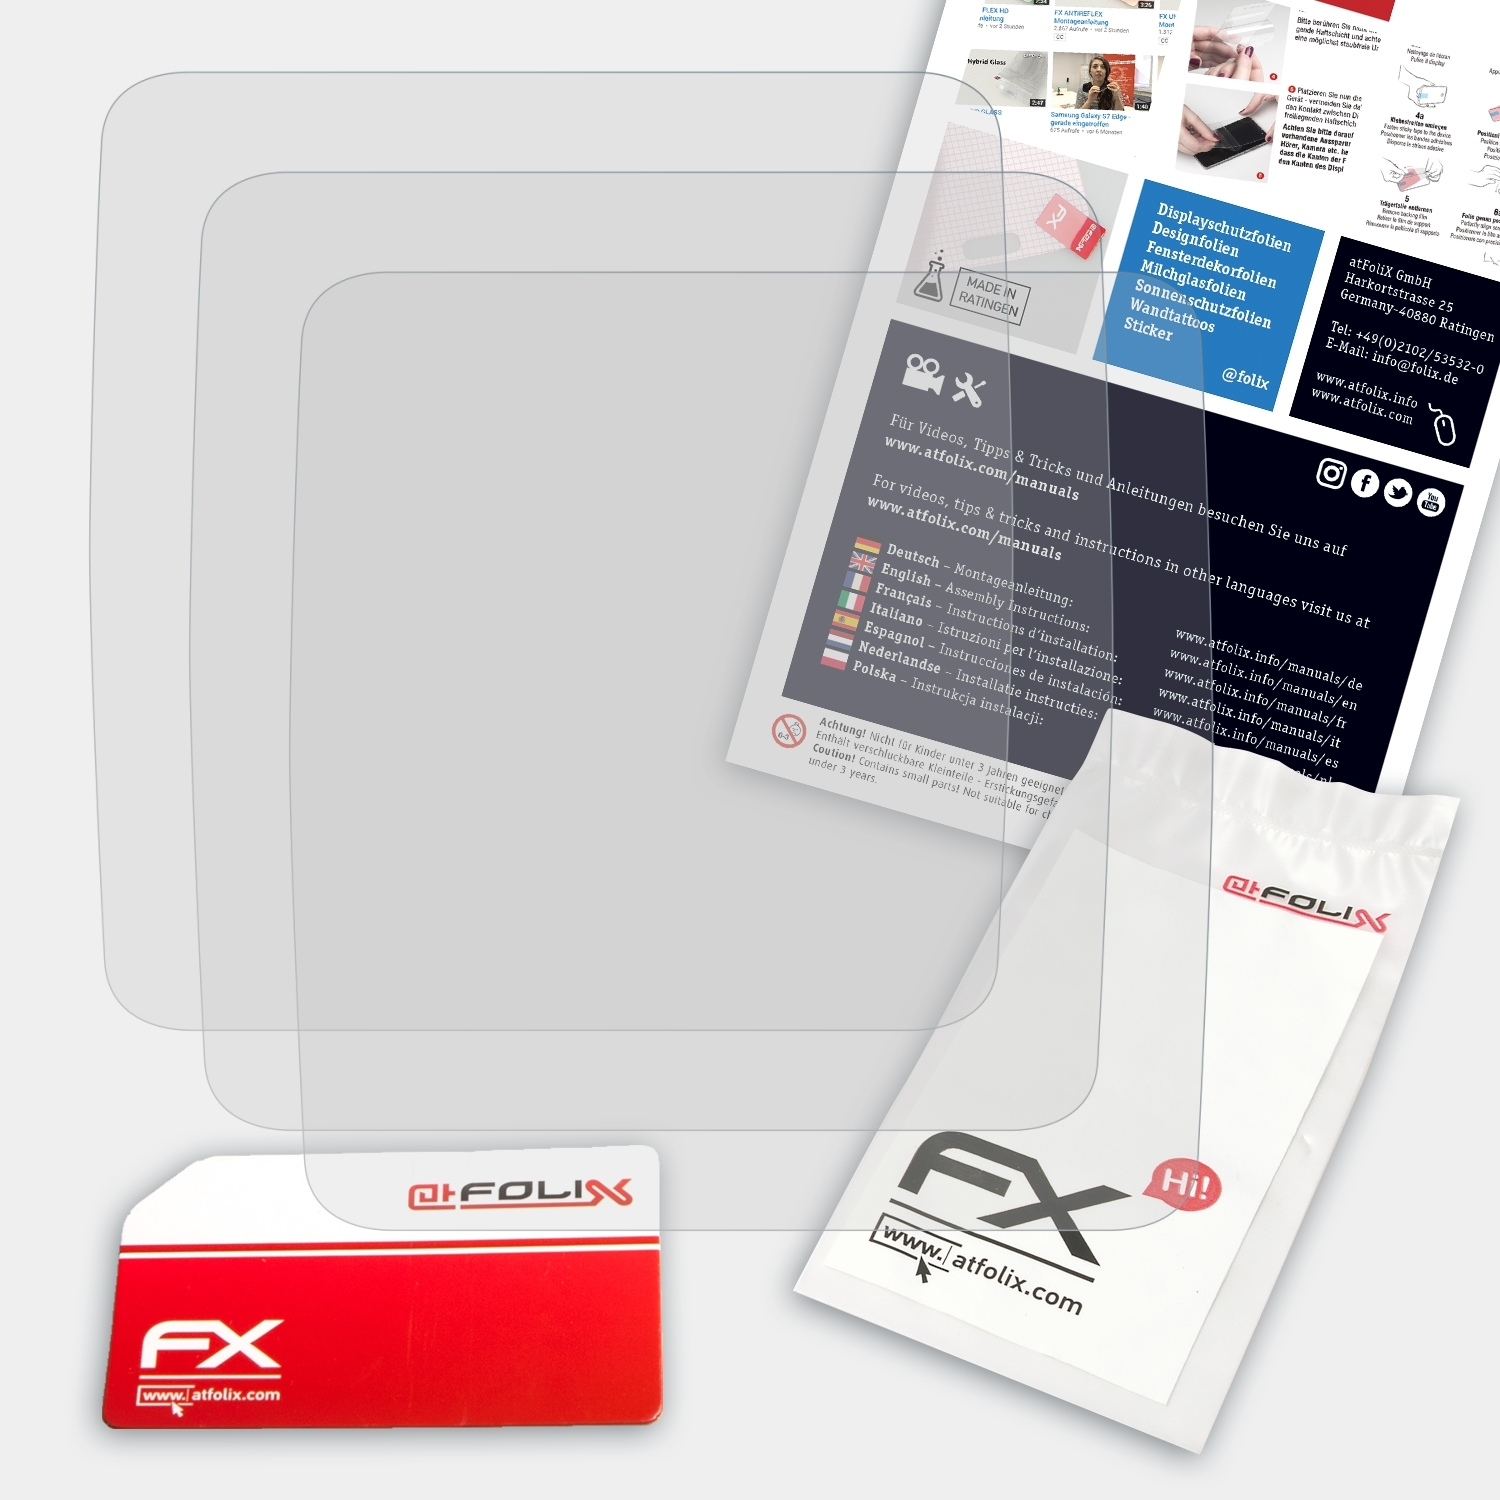 ATFOLIX 3x FX-Antireflex Displayschutz(für Cardio) Multi-Sport TomTom